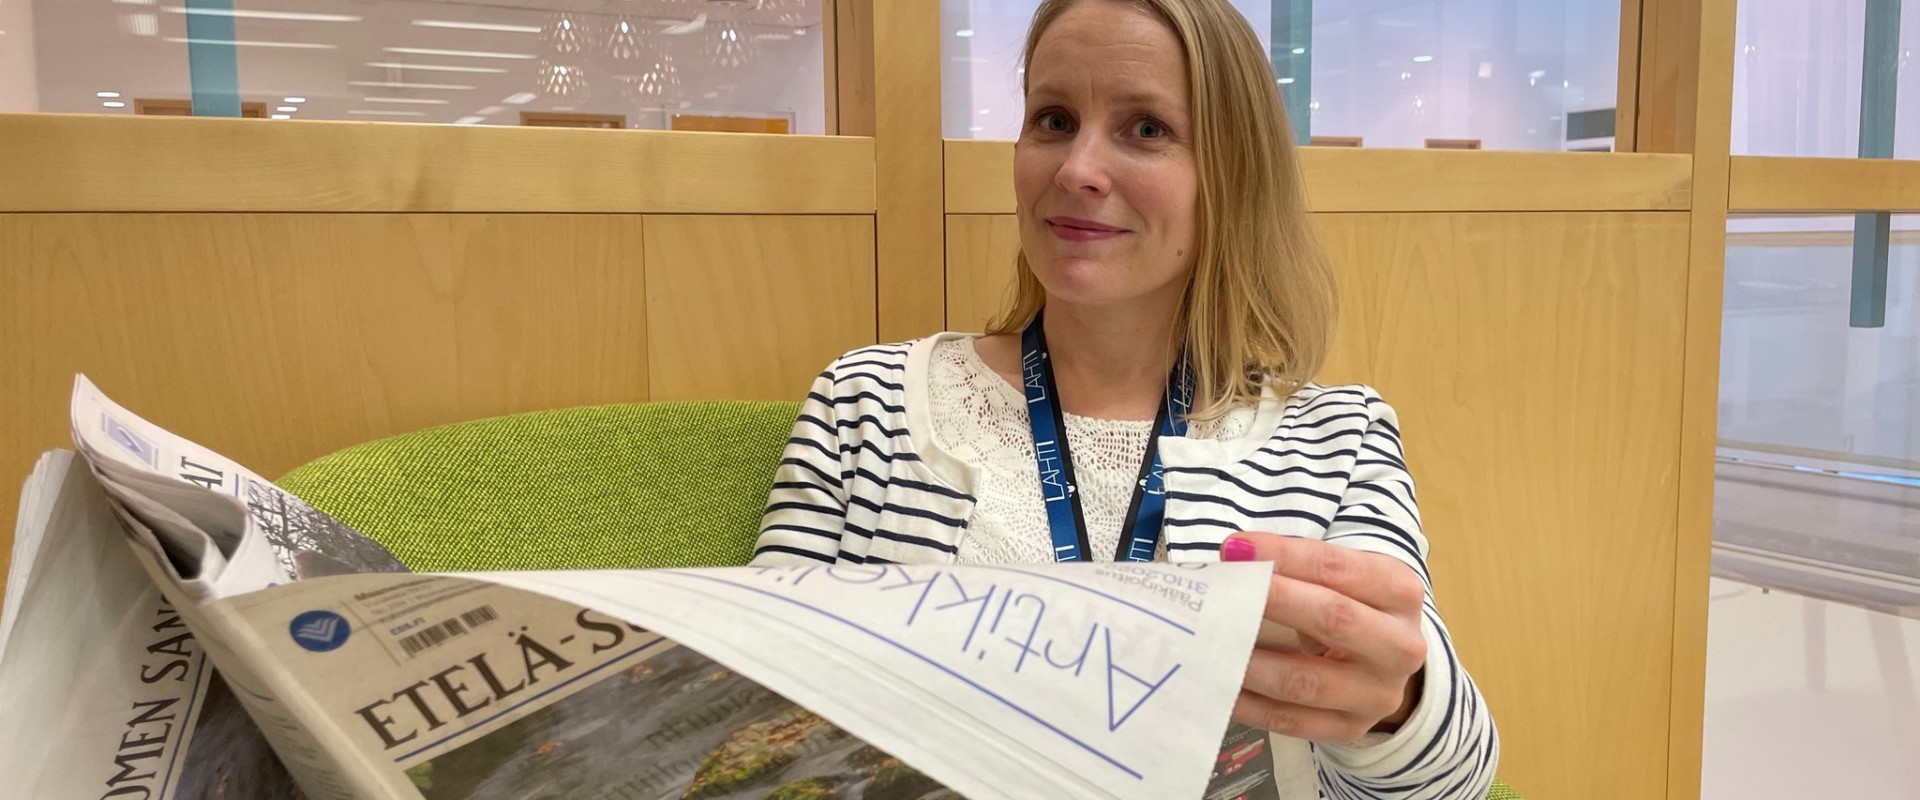 Kirjaston hanketyöntekijä Kaisa Halme lukee paperista Etelä-Suomen Sanomat -lehteä ja katsoo hymyillen kameraan.